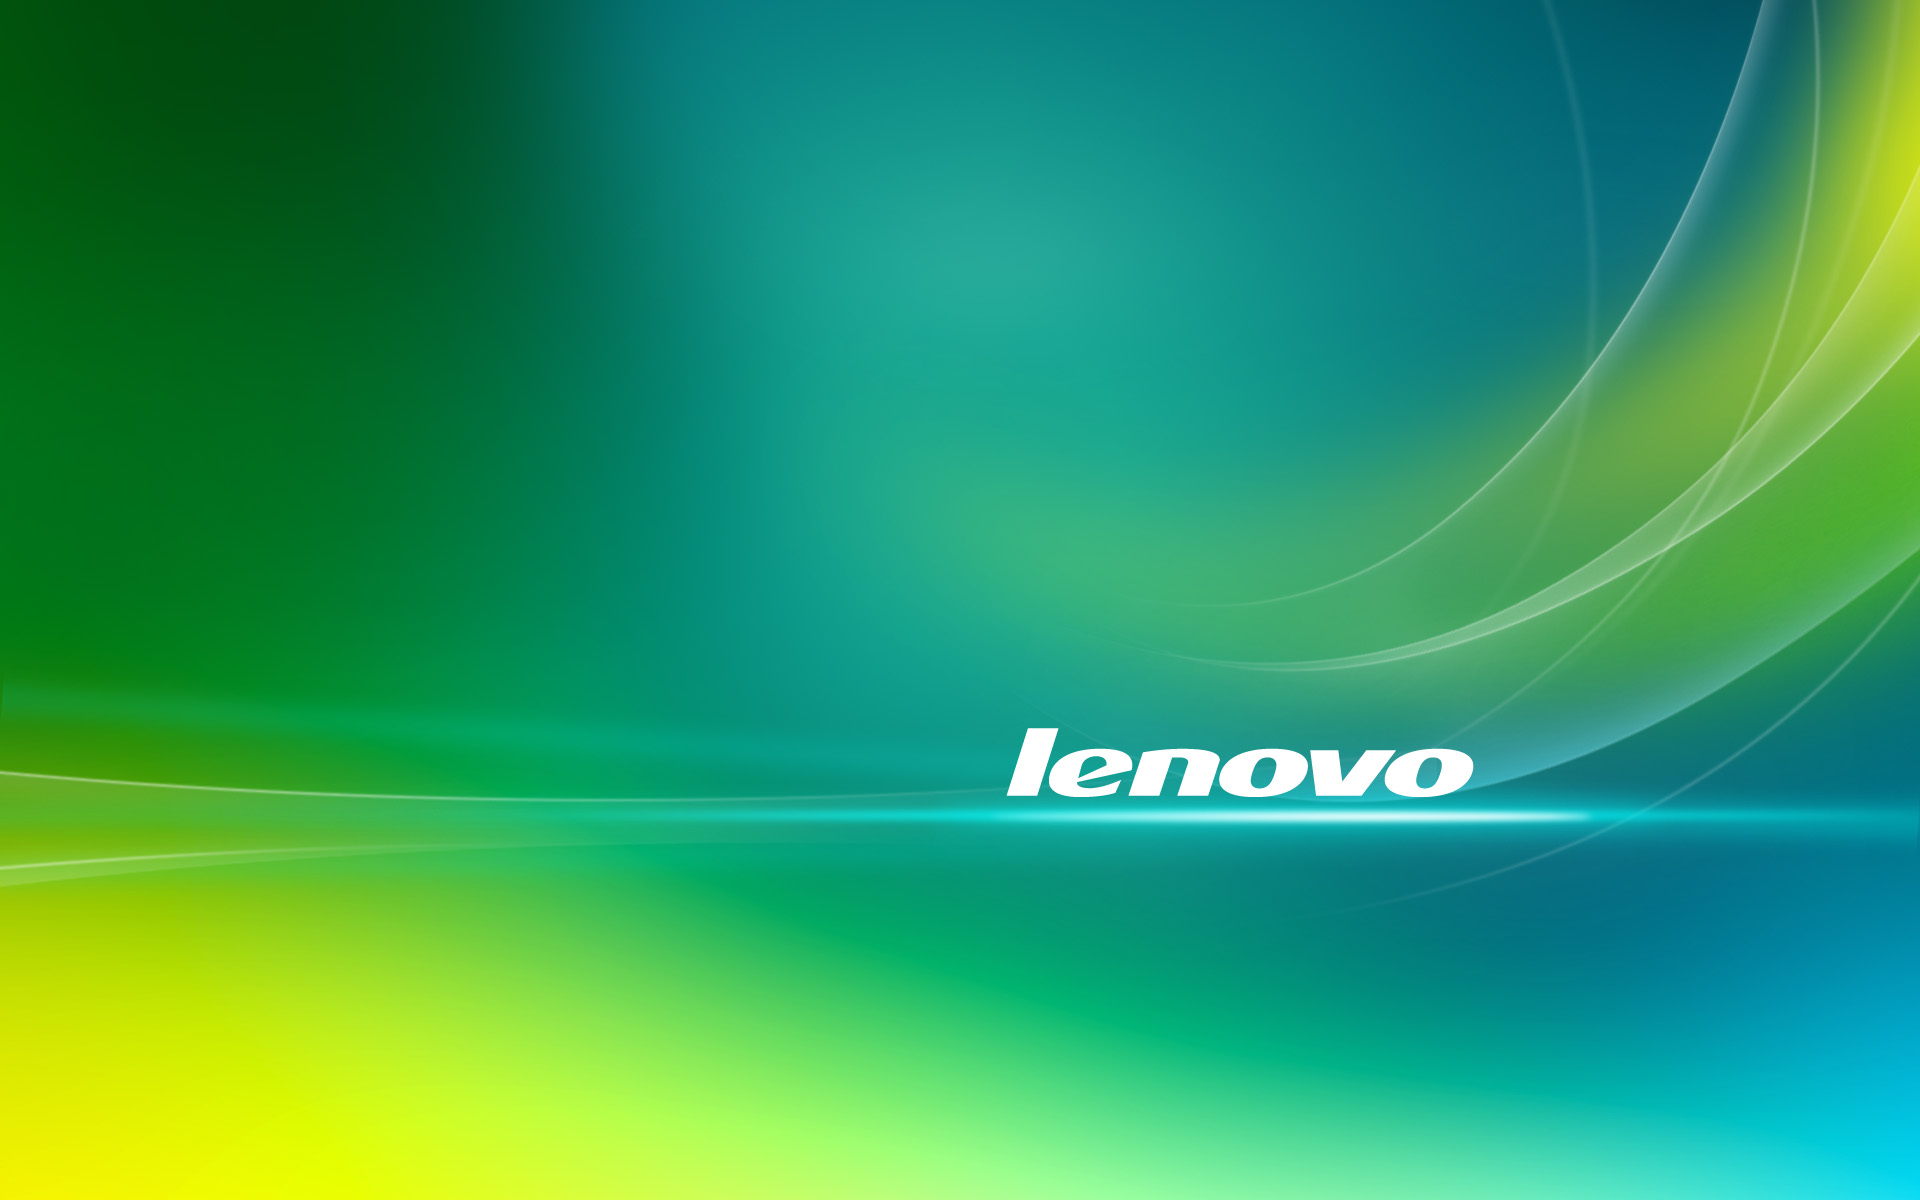 Lenovo2 Lenovo Wallpaper Windows